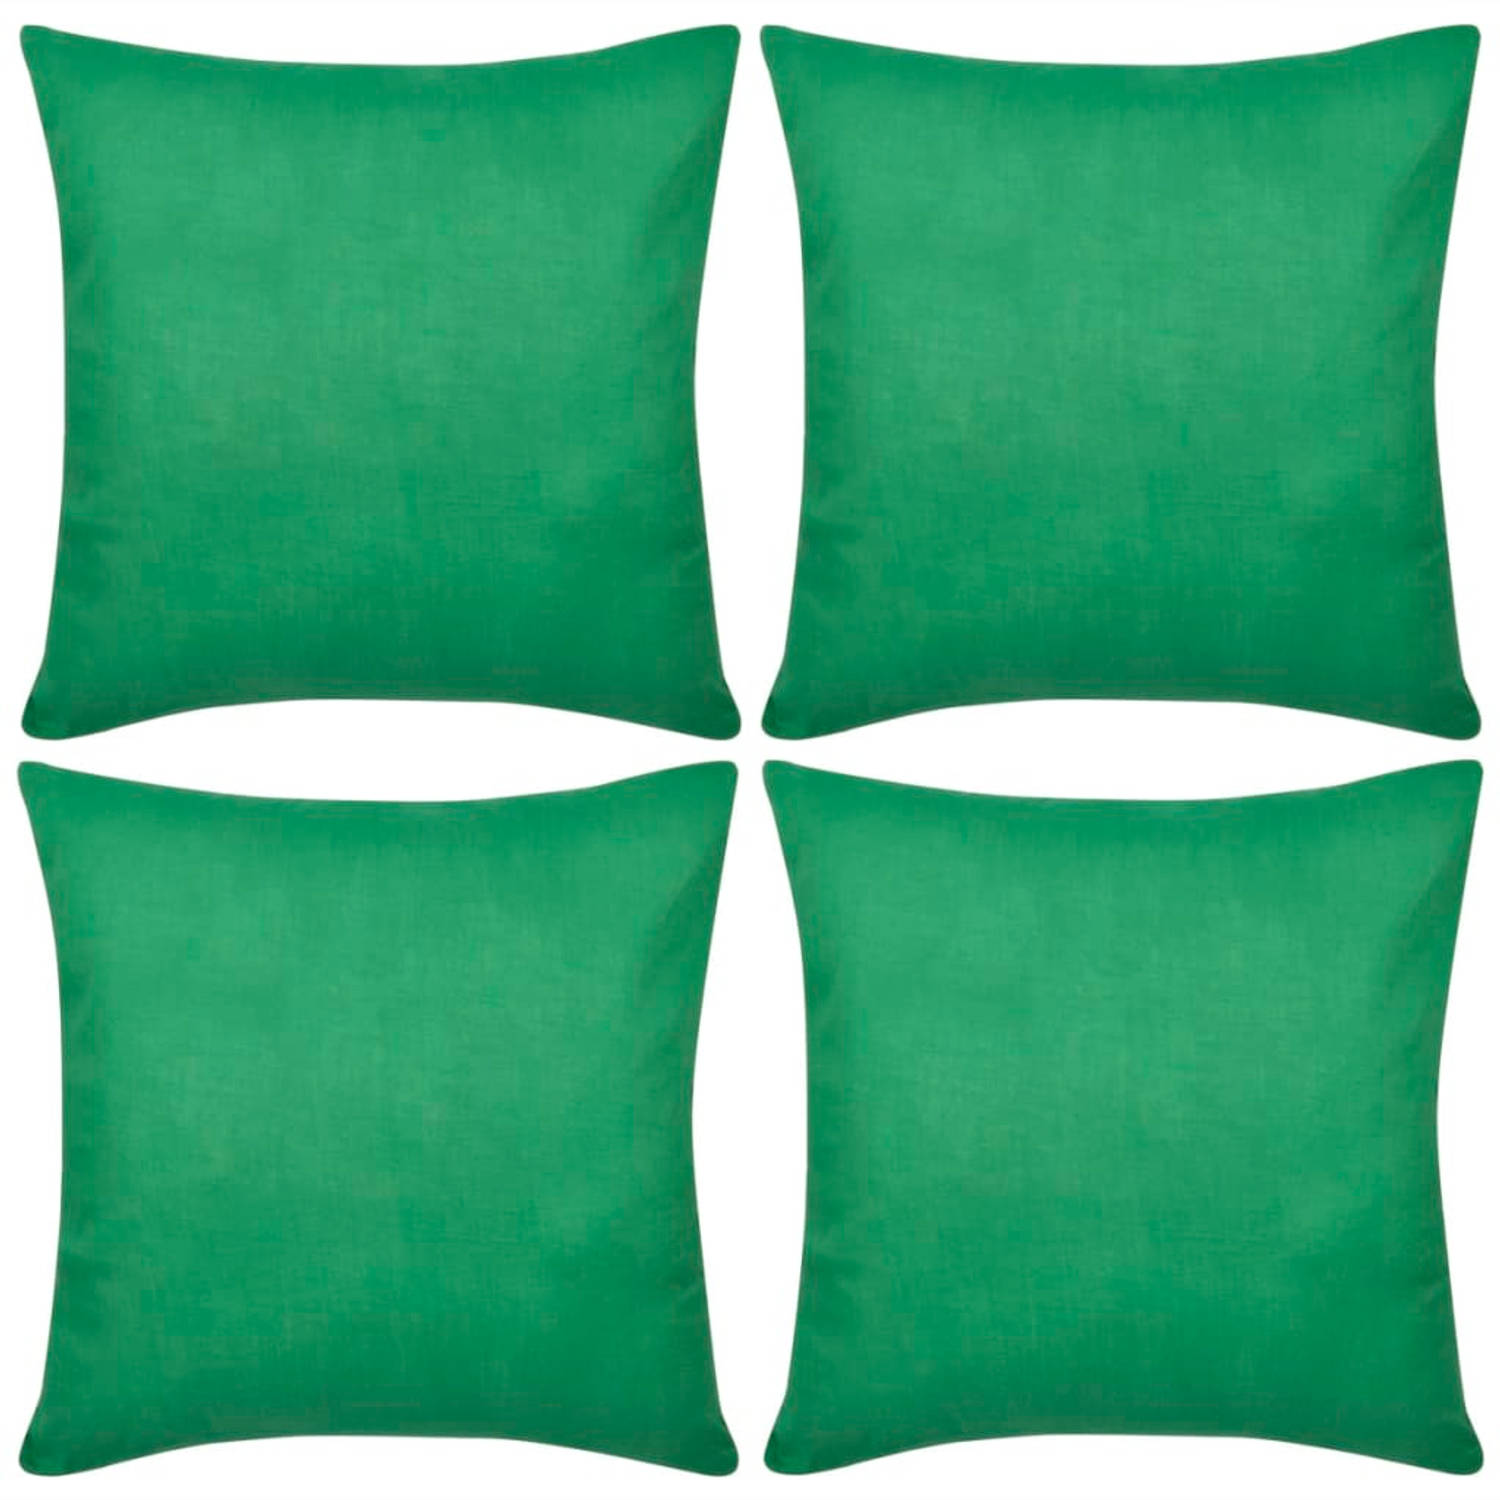 Kussenhoezen katoen 80 x 80 cm groen 4 stuks